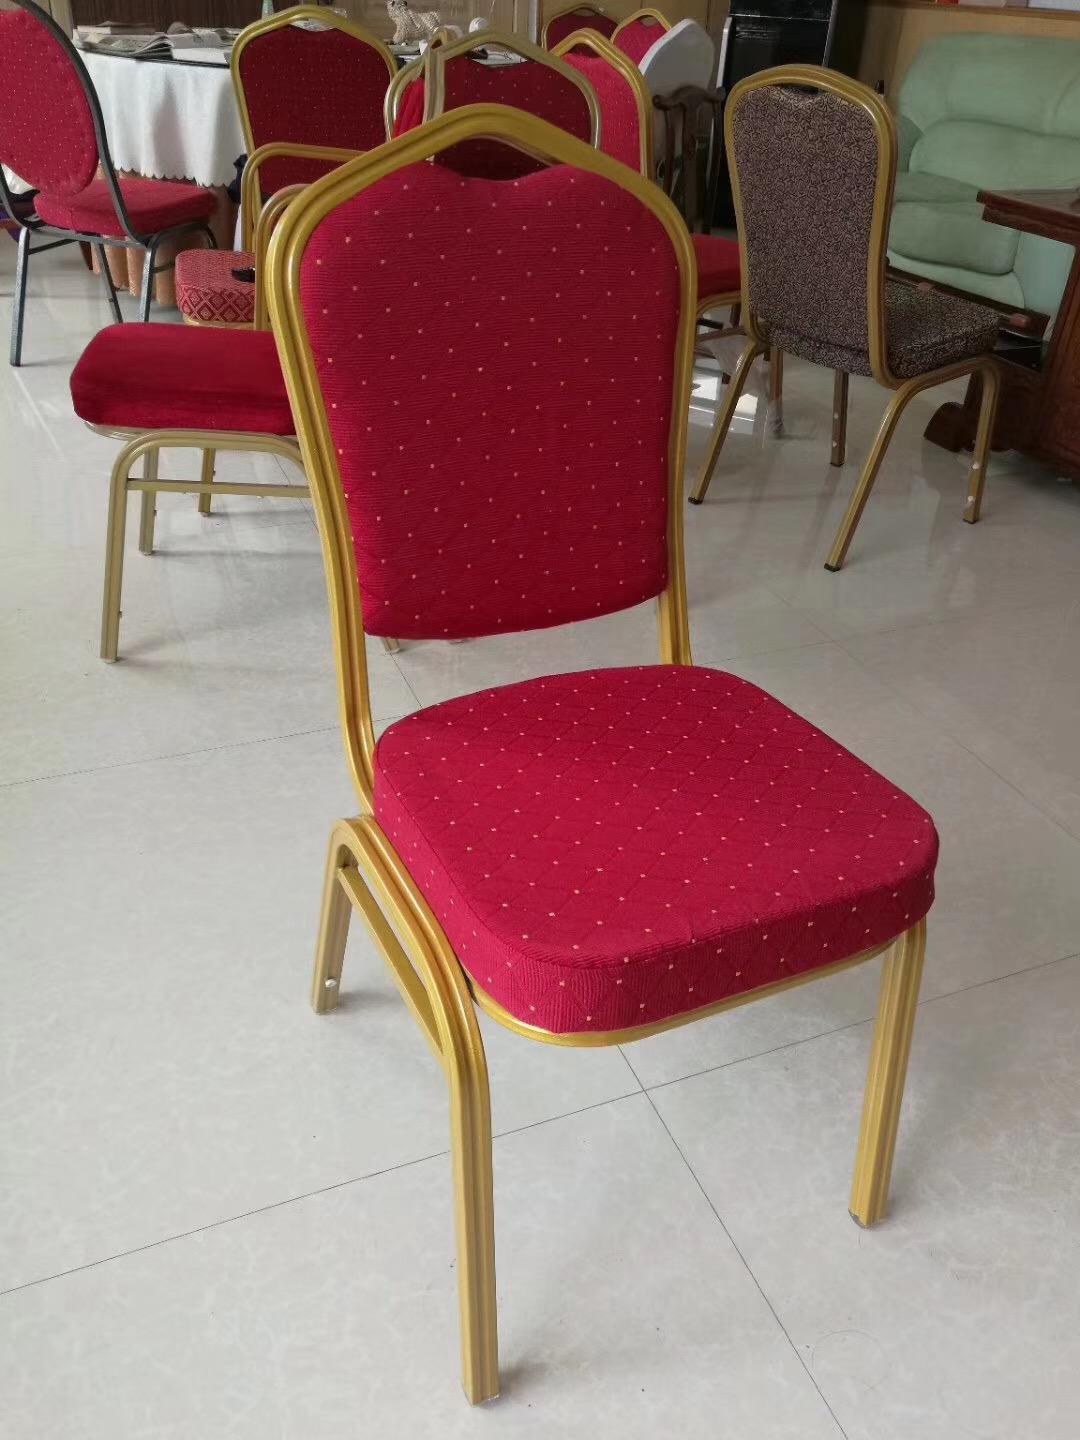 批发定做酒店椅子软包金属将军椅饭店椅宴会椅婚庆椅主题餐厅桌椅